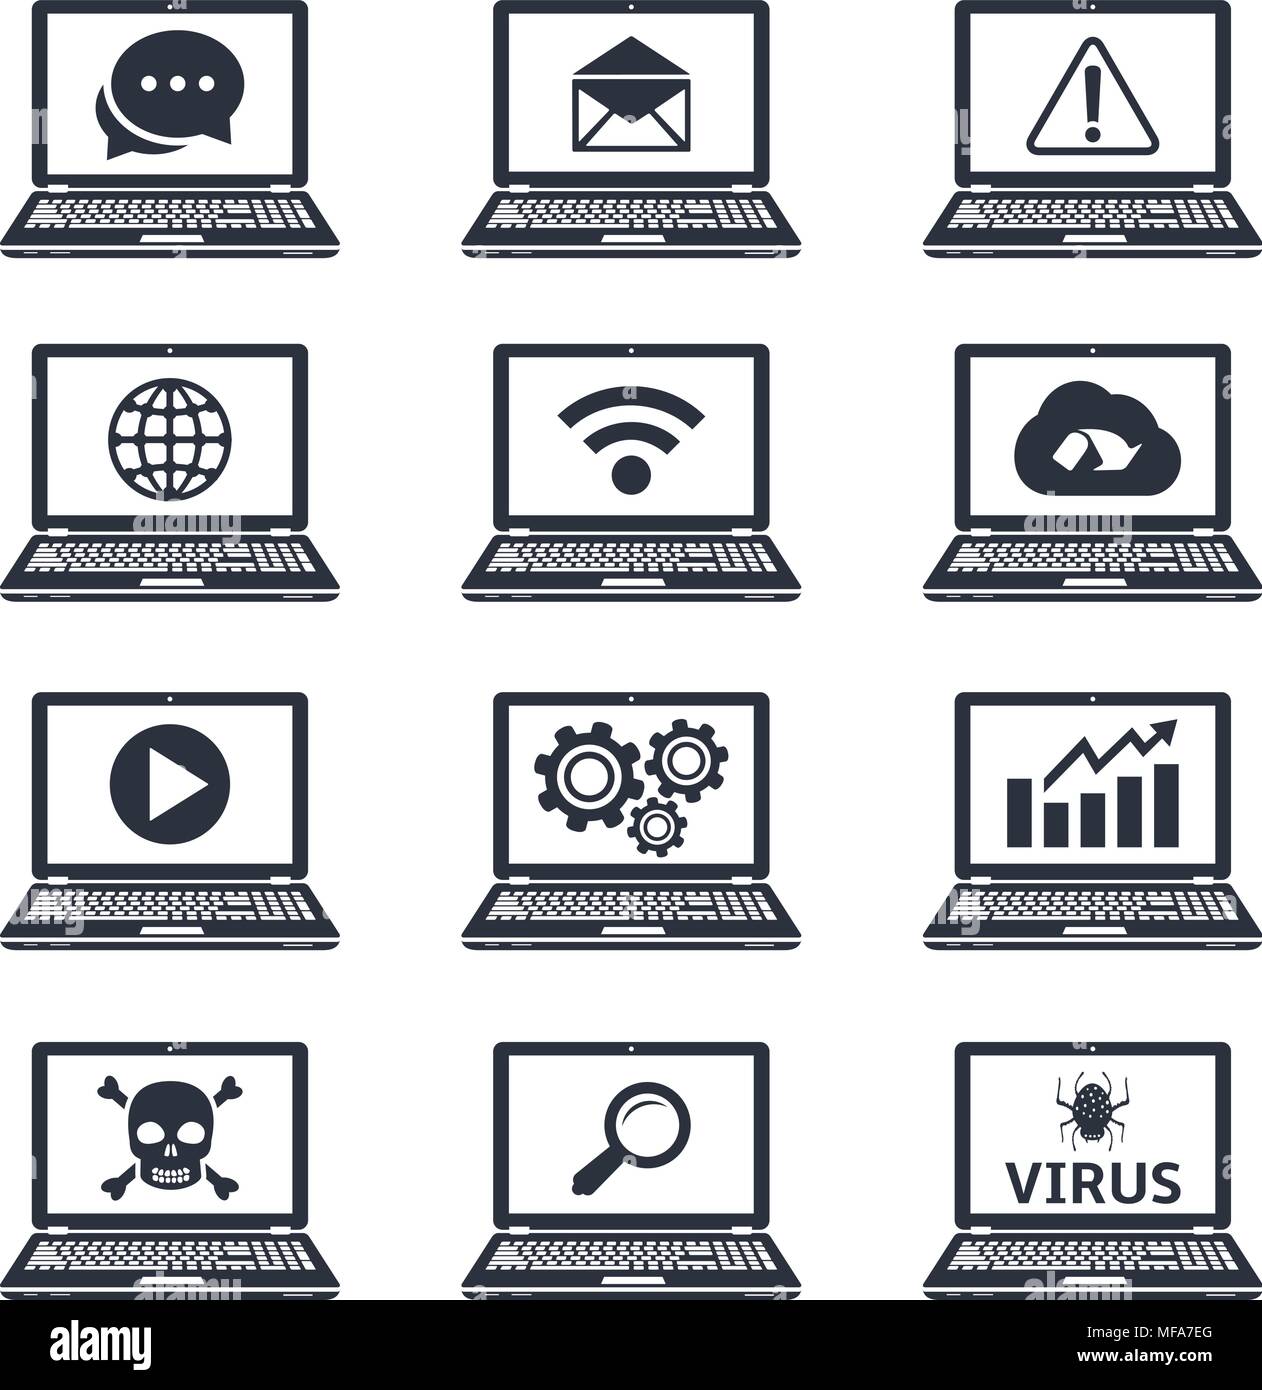 Sammlung von Laptop-Symbole mit Zeichen und Symbole auf dem Bildschirm.  Vector Illustration Stock-Vektorgrafik - Alamy